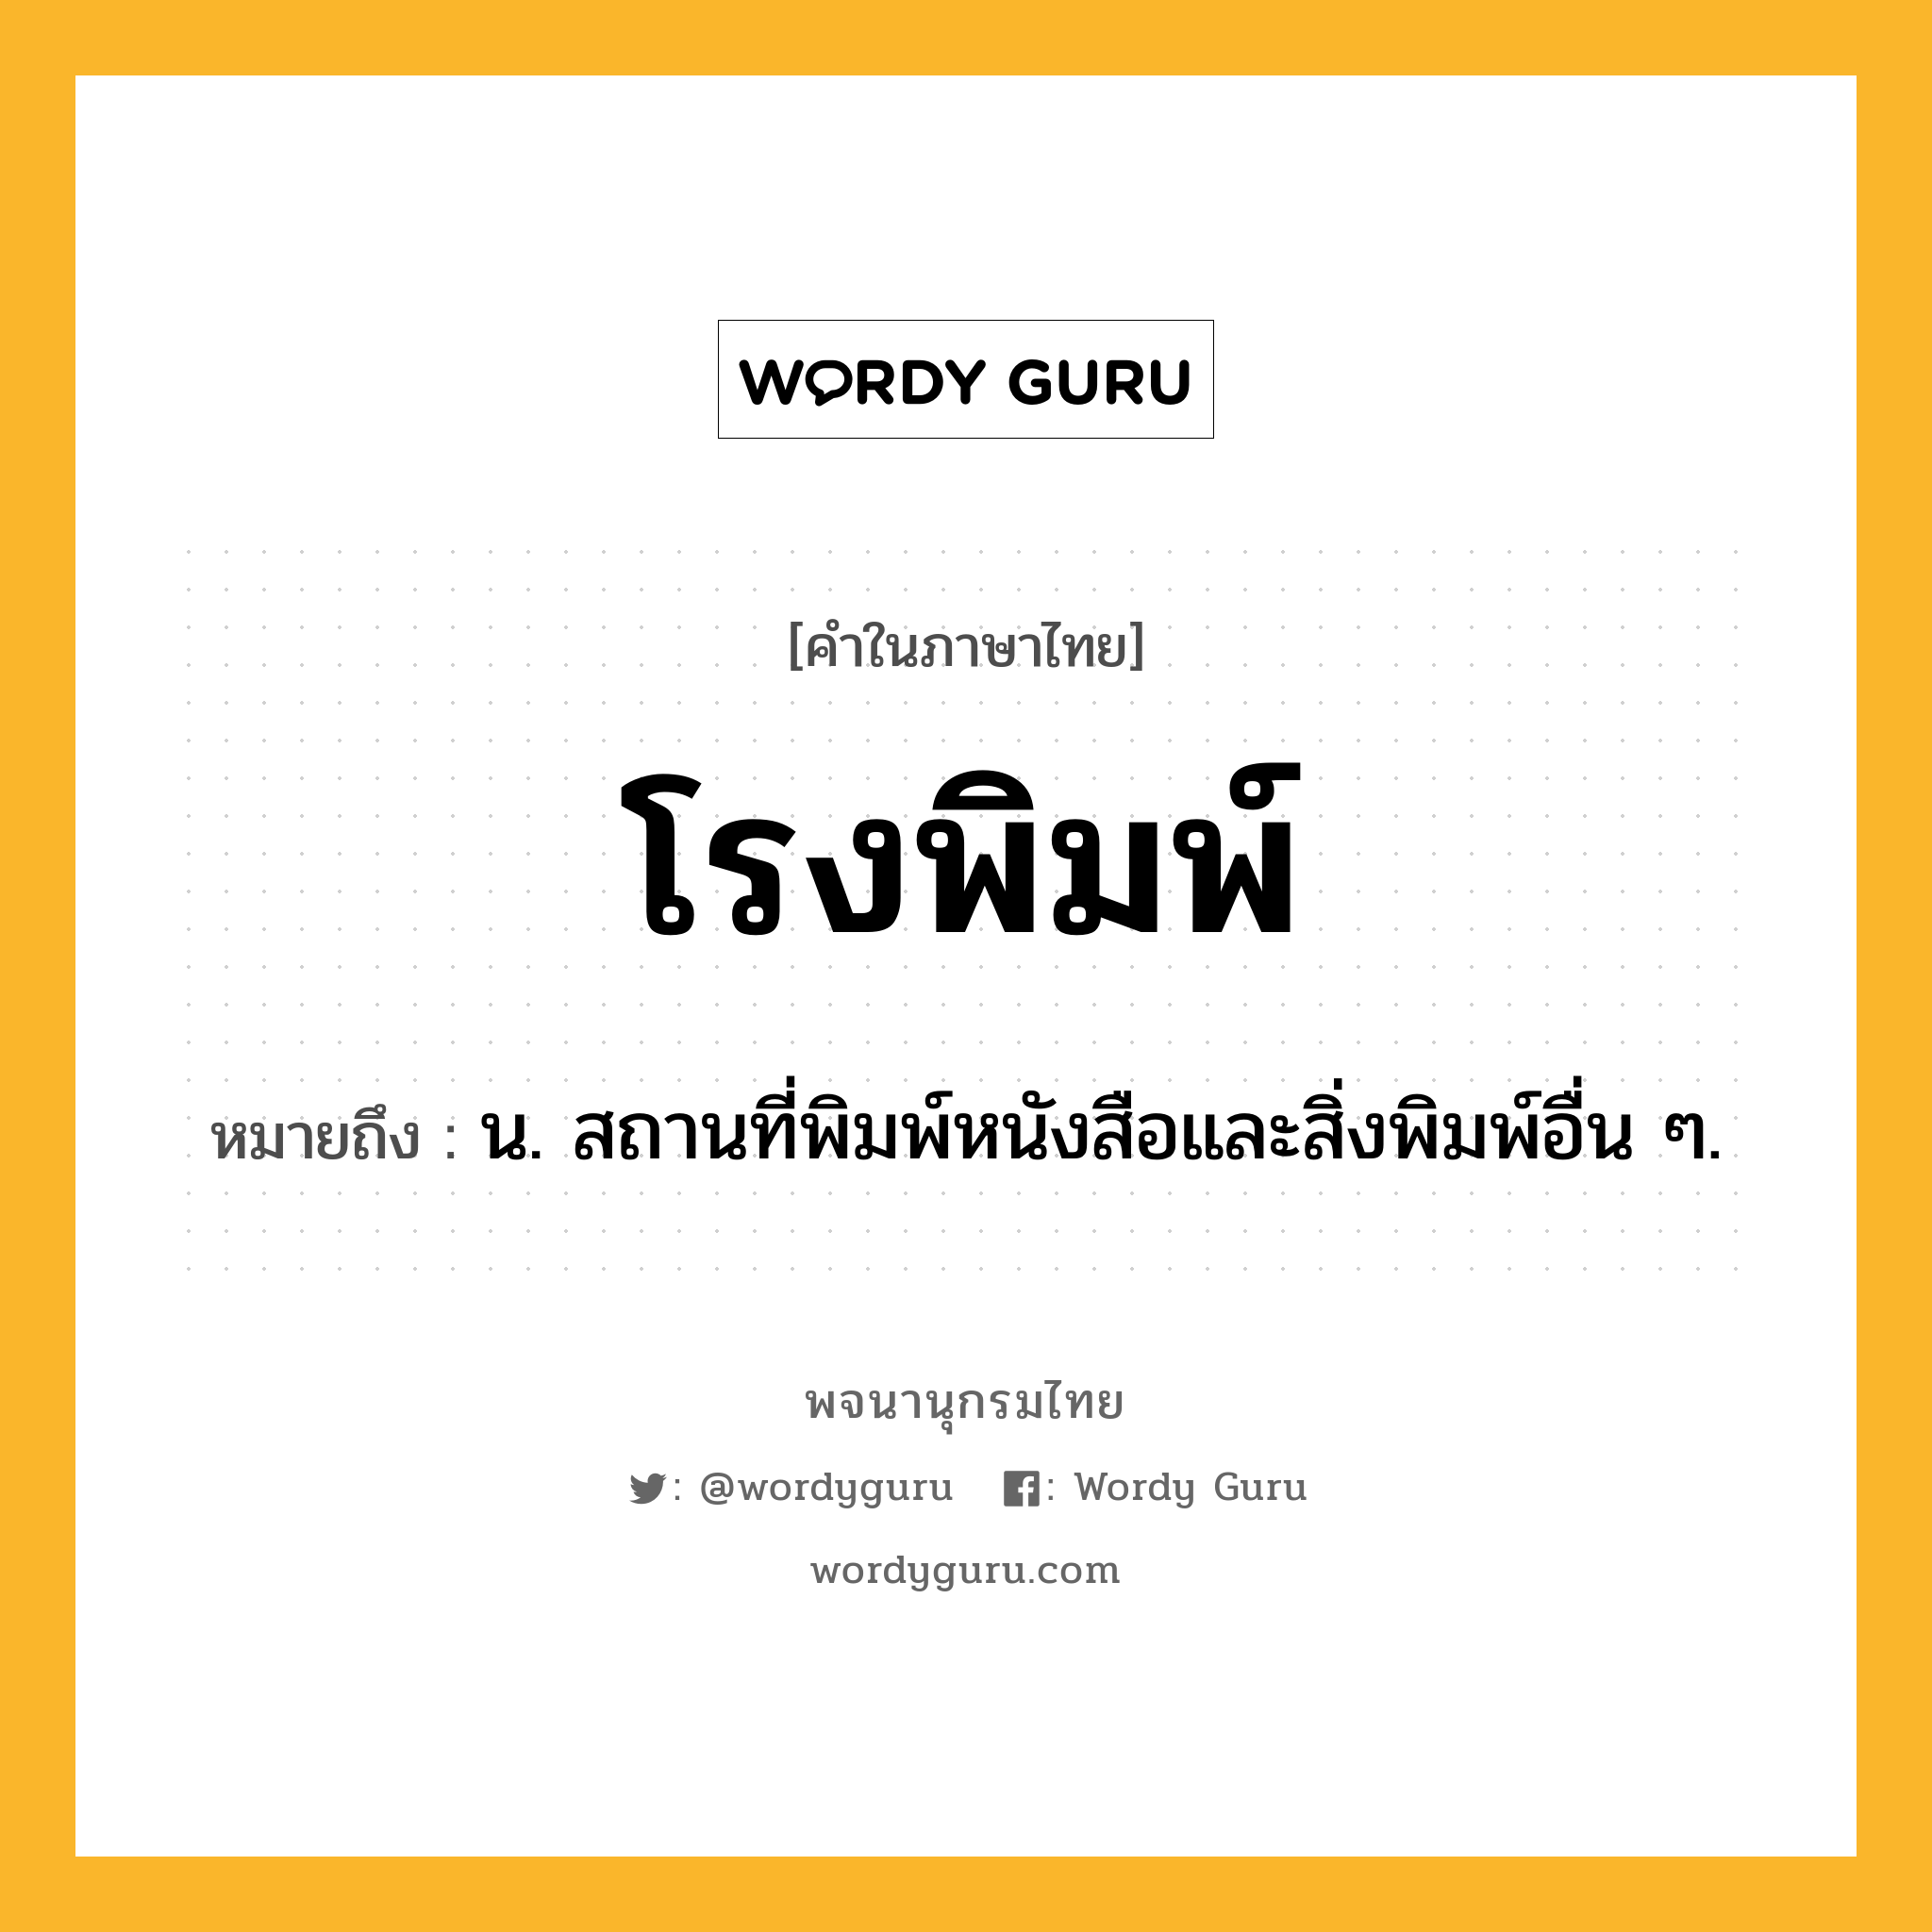 โรงพิมพ์ หมายถึงอะไร?, คำในภาษาไทย โรงพิมพ์ หมายถึง น. สถานที่พิมพ์หนังสือและสิ่งพิมพ์อื่น ๆ.